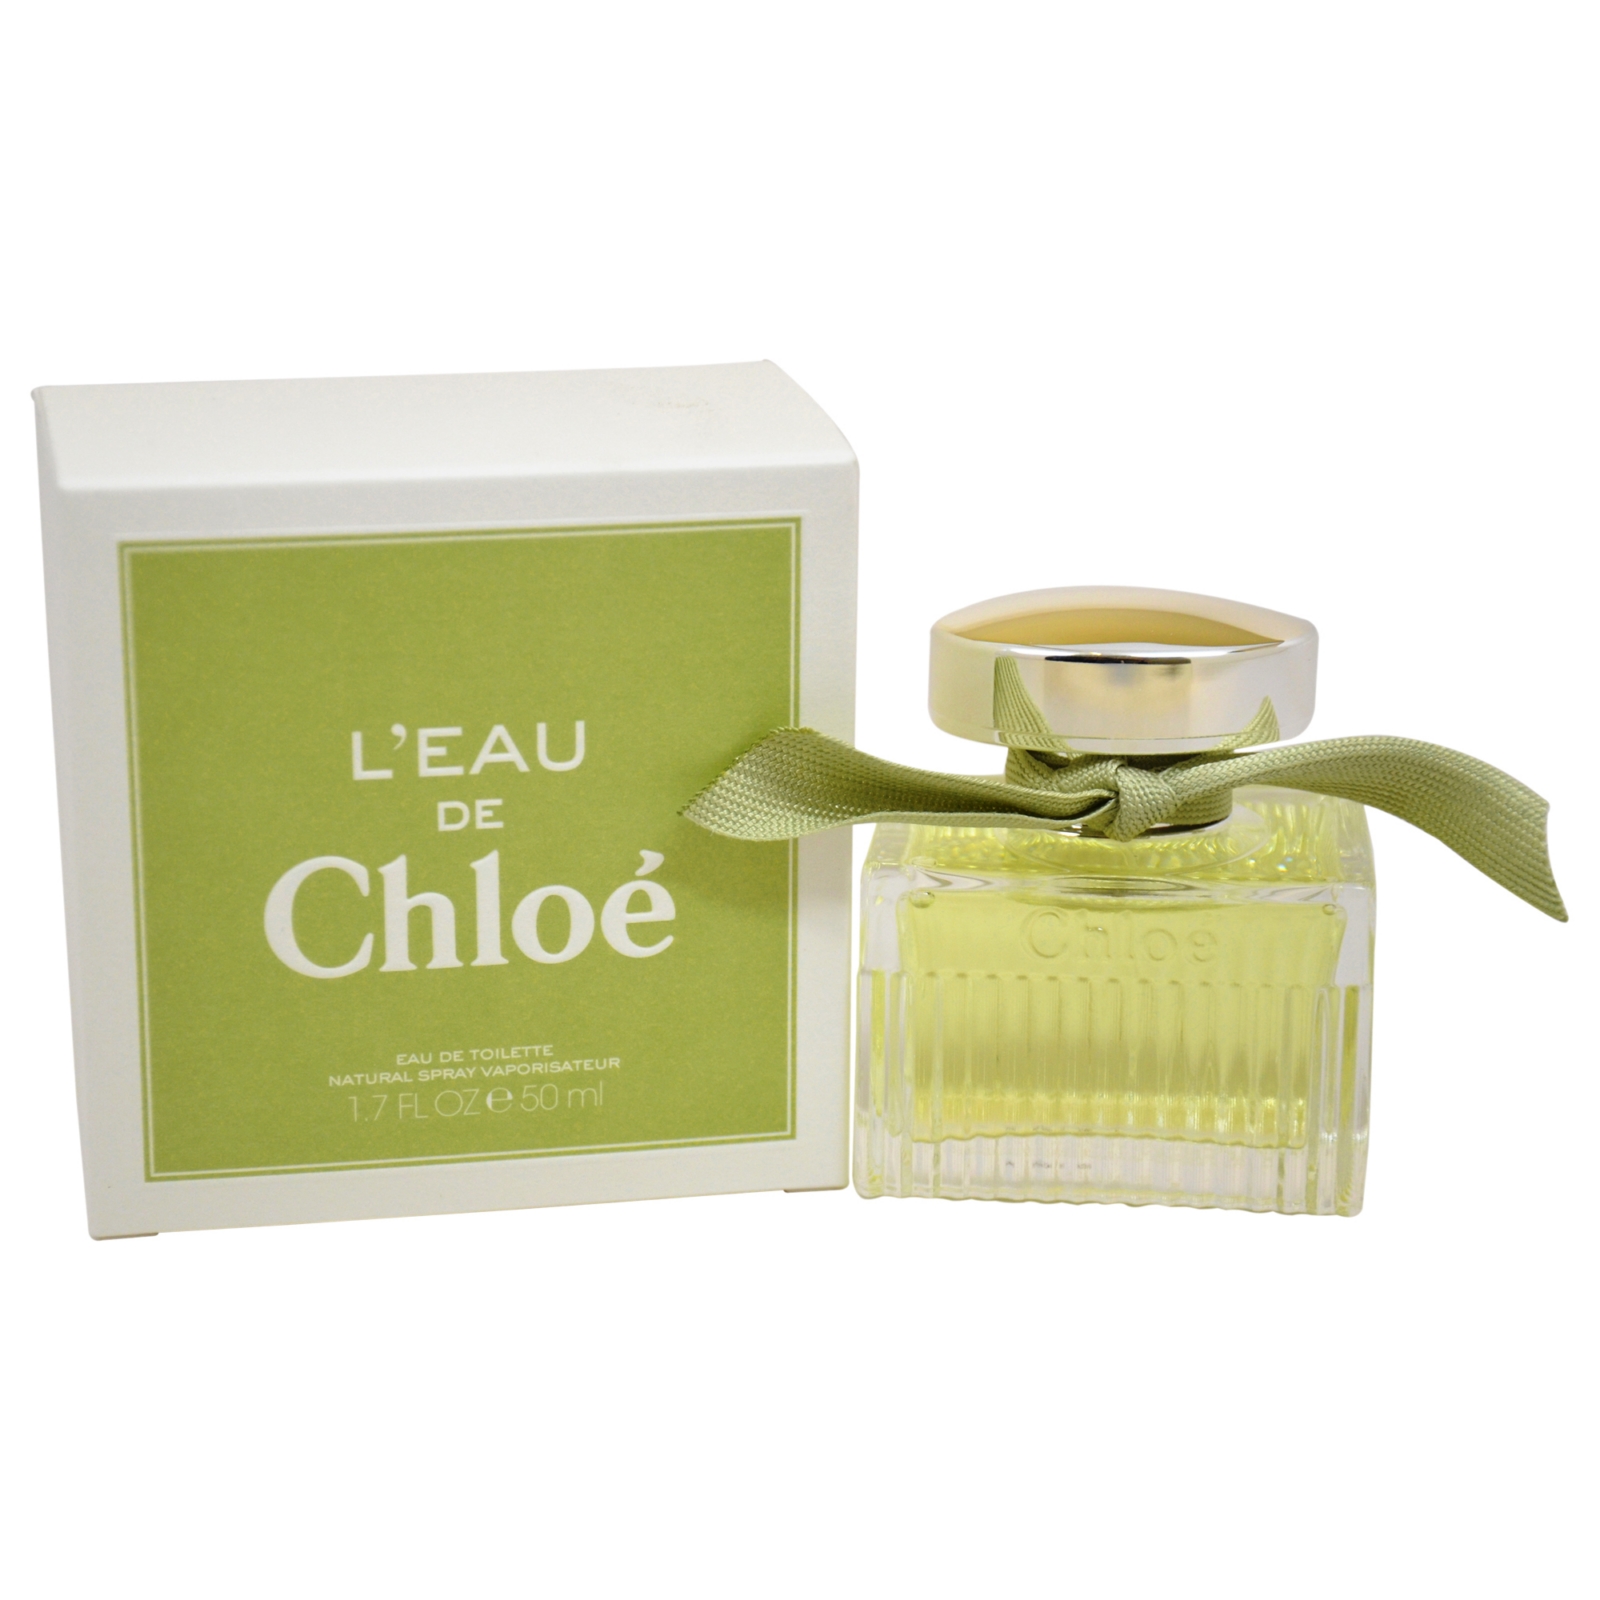 Chloe L'Eau De  by Parfums  for Women - 1.7 oz EDT Spray